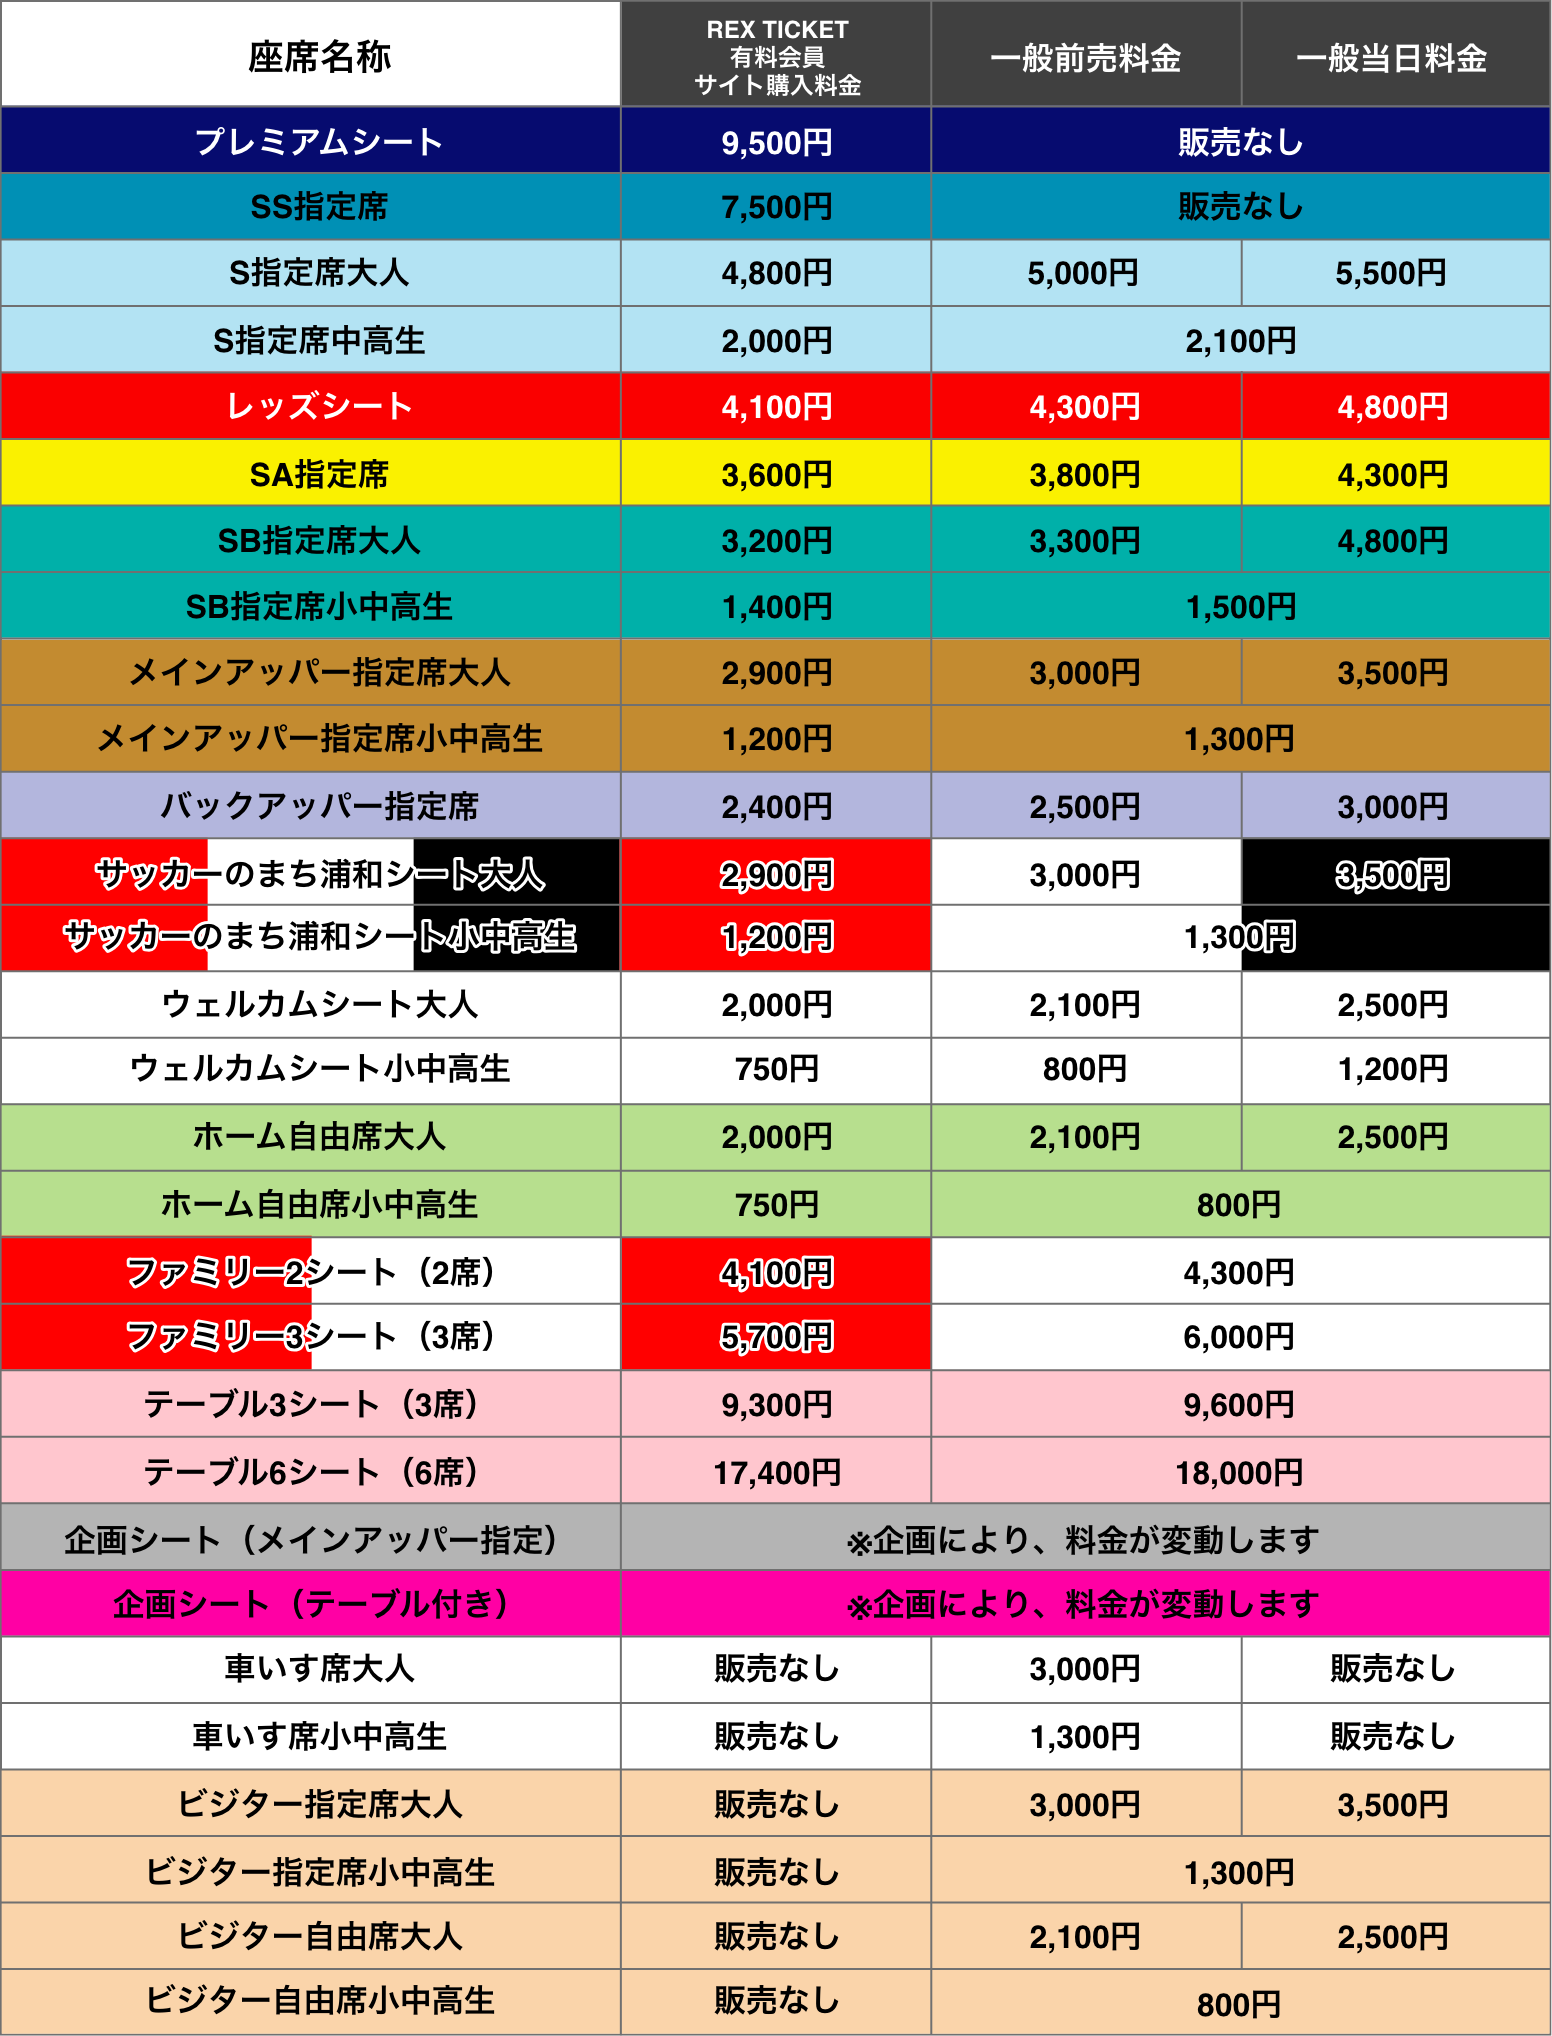 2019 浦和レッズ ホームゲームチケット料金表をチェック